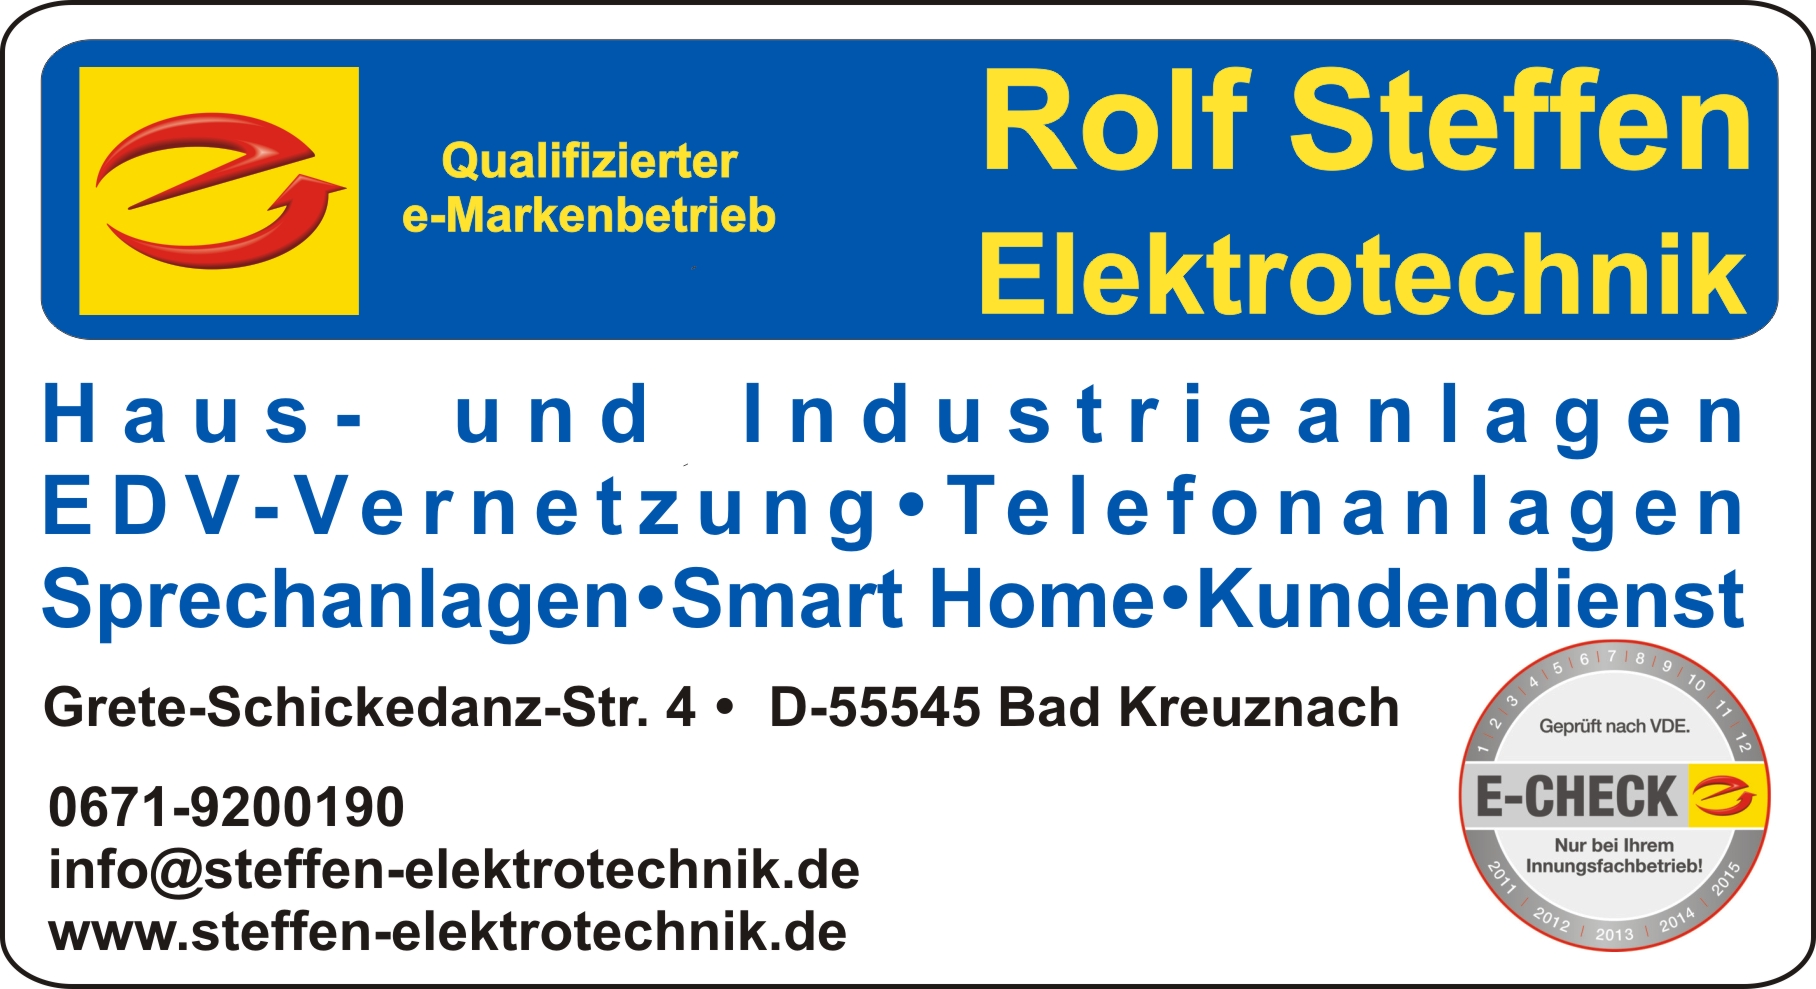 Rolf Steffen Elektrotechnik